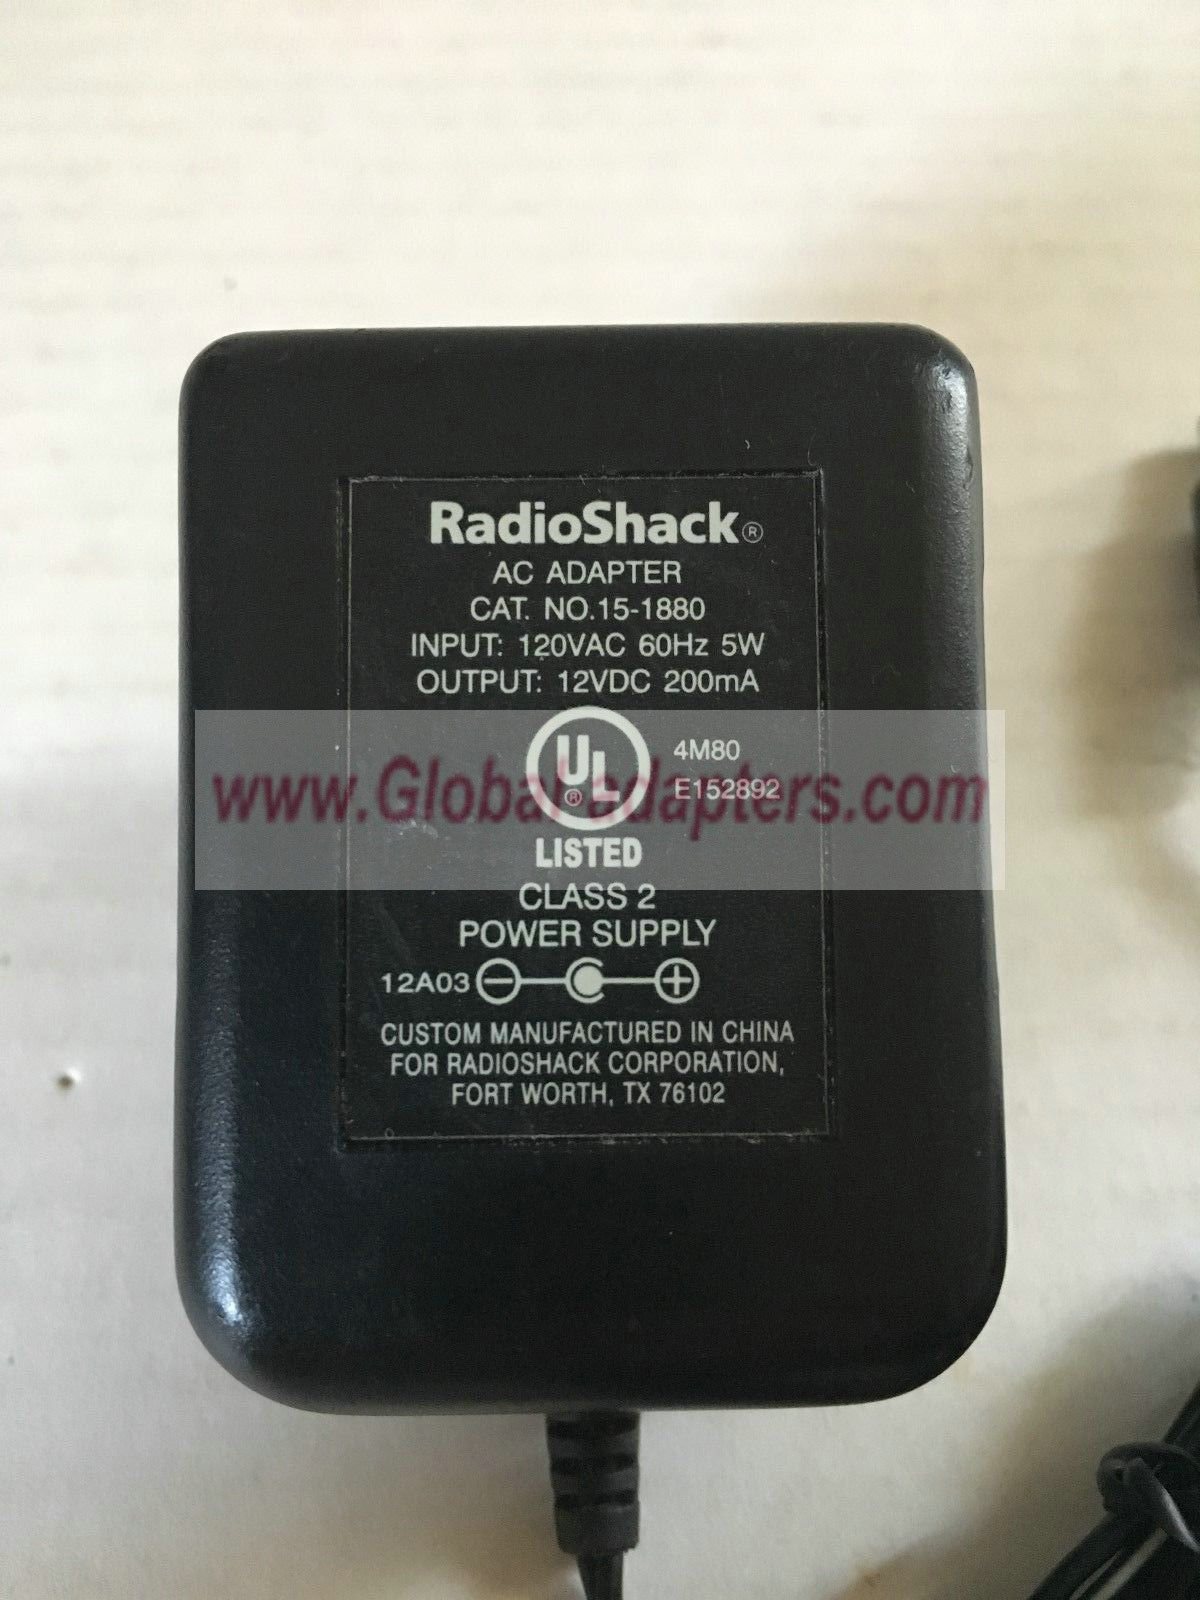 NEW 12V 200mA RadioShack 15-1880 AC Adapter - Click Image to Close